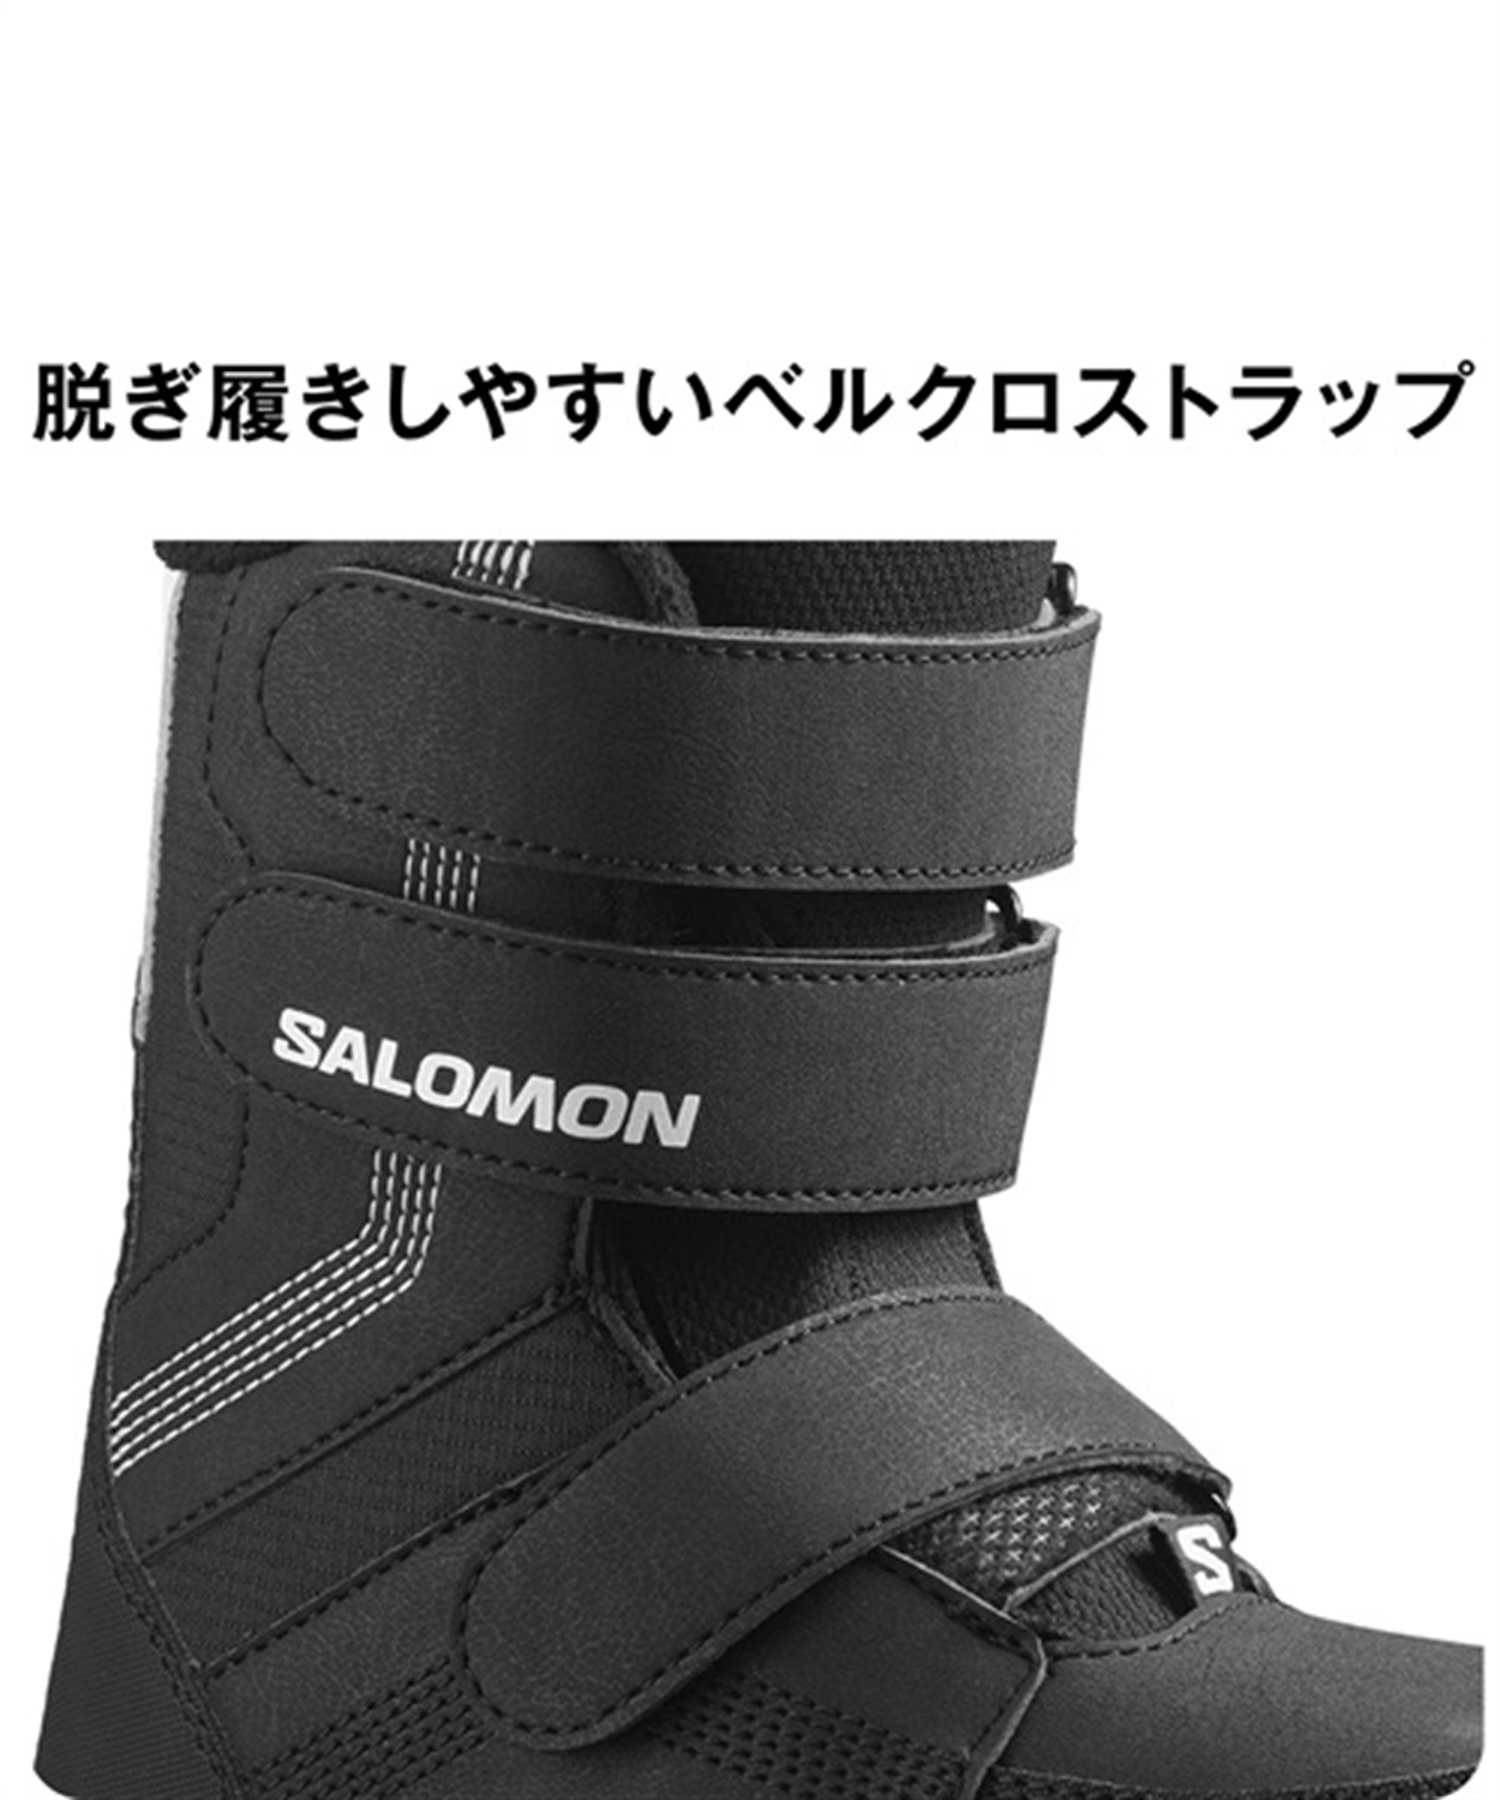 SALOMON サロモン スノーボード ブーツ キッズ ユース WHIPSTAR 23-24 